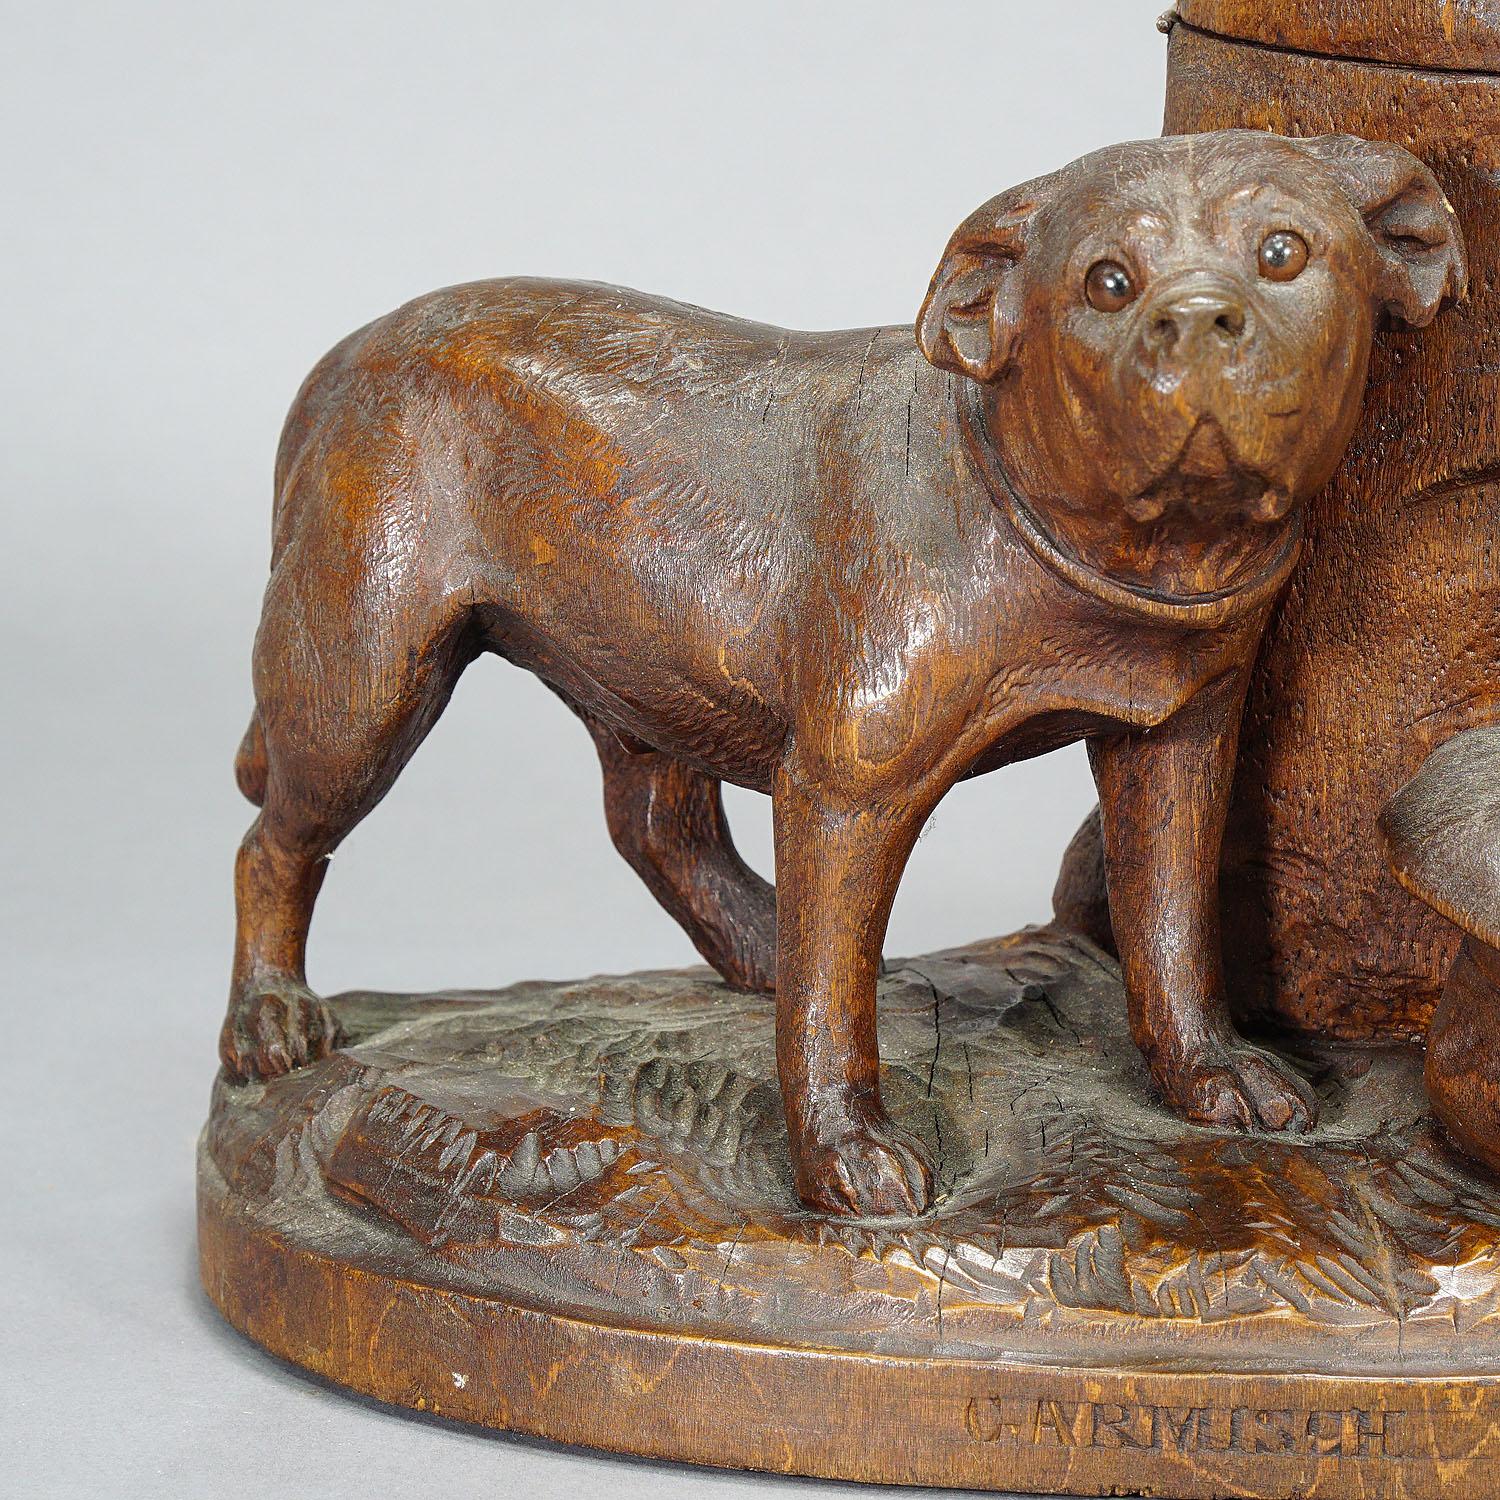 Boîte à tabac en bois sculpté avec Boxer, Suisse vers 1900

Humidificateur en bois sculpté du début du 20e siècle, originaire de Suisse, représentant un chien boxeur à côté d'un tronc sur lequel on peut basculer le couvercle pour ouvrir la réserve